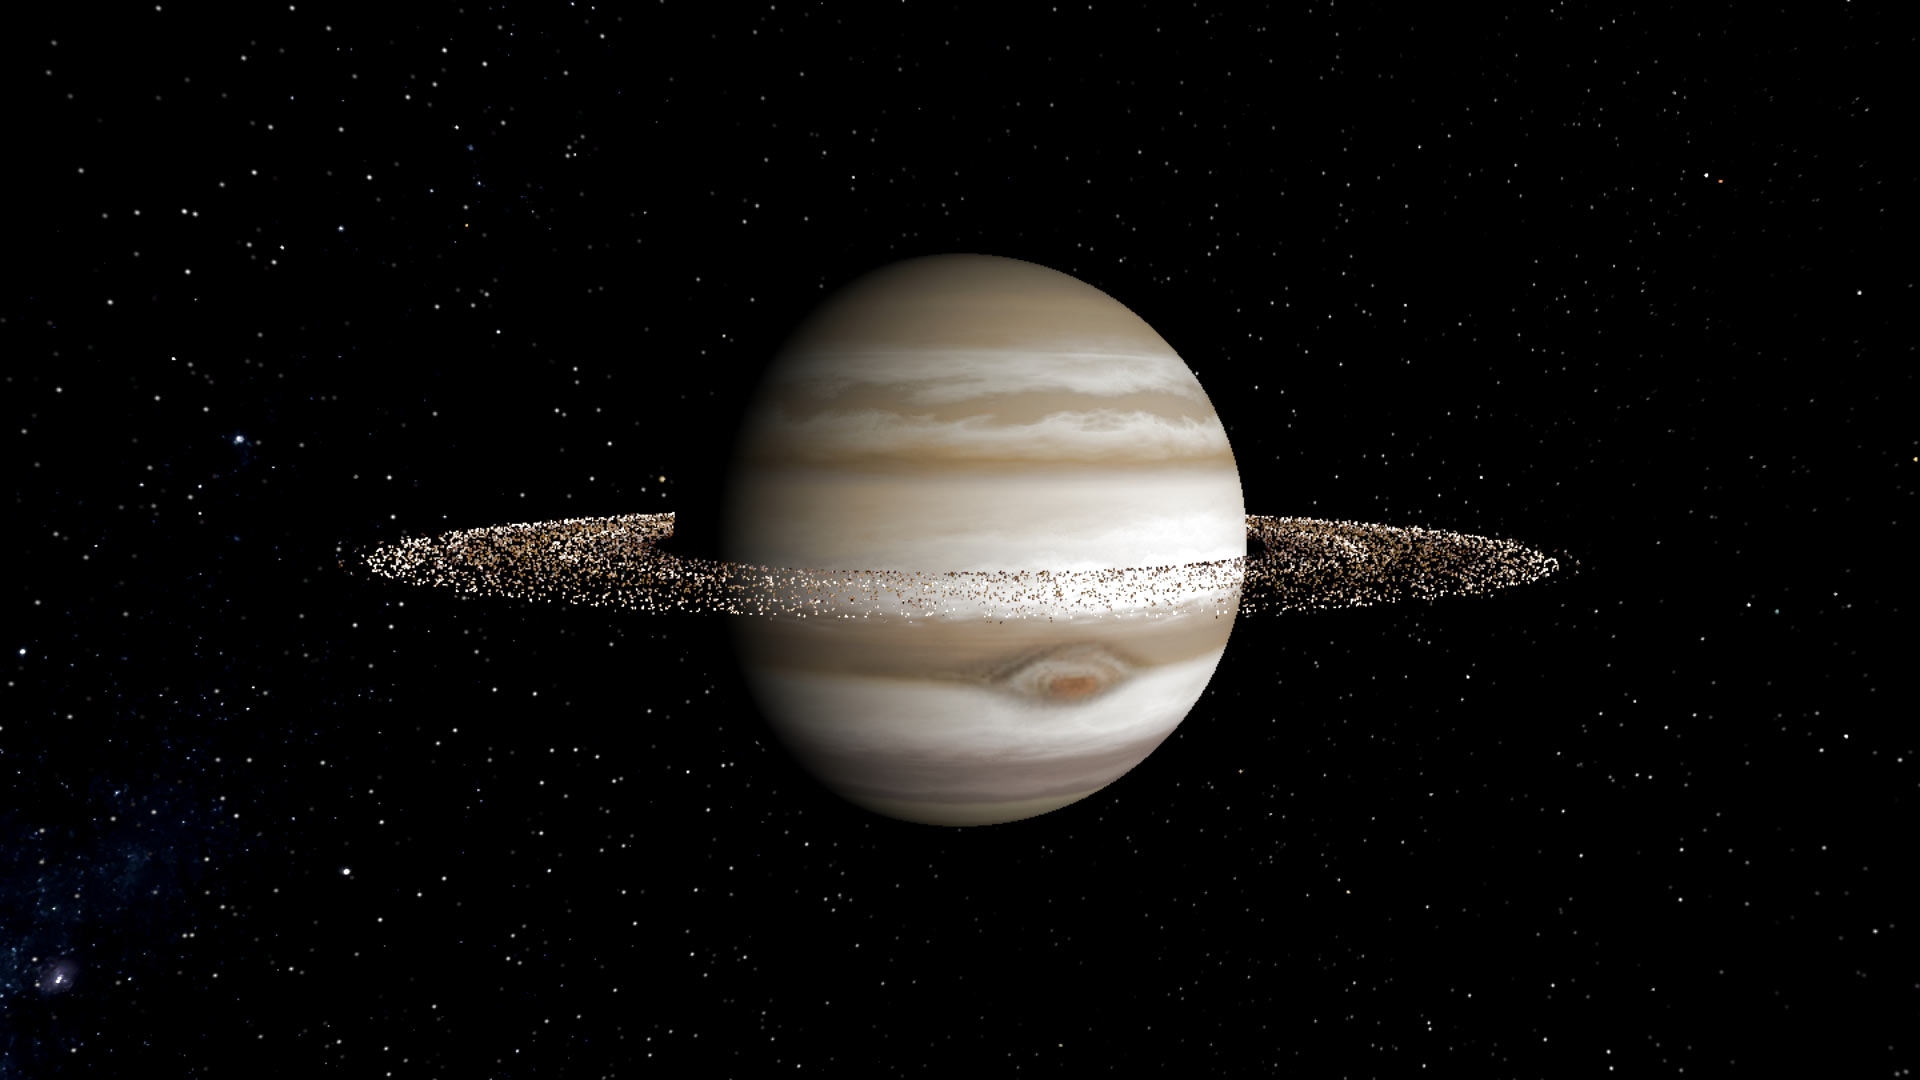 Художественное изображение Юпитера с кольцами